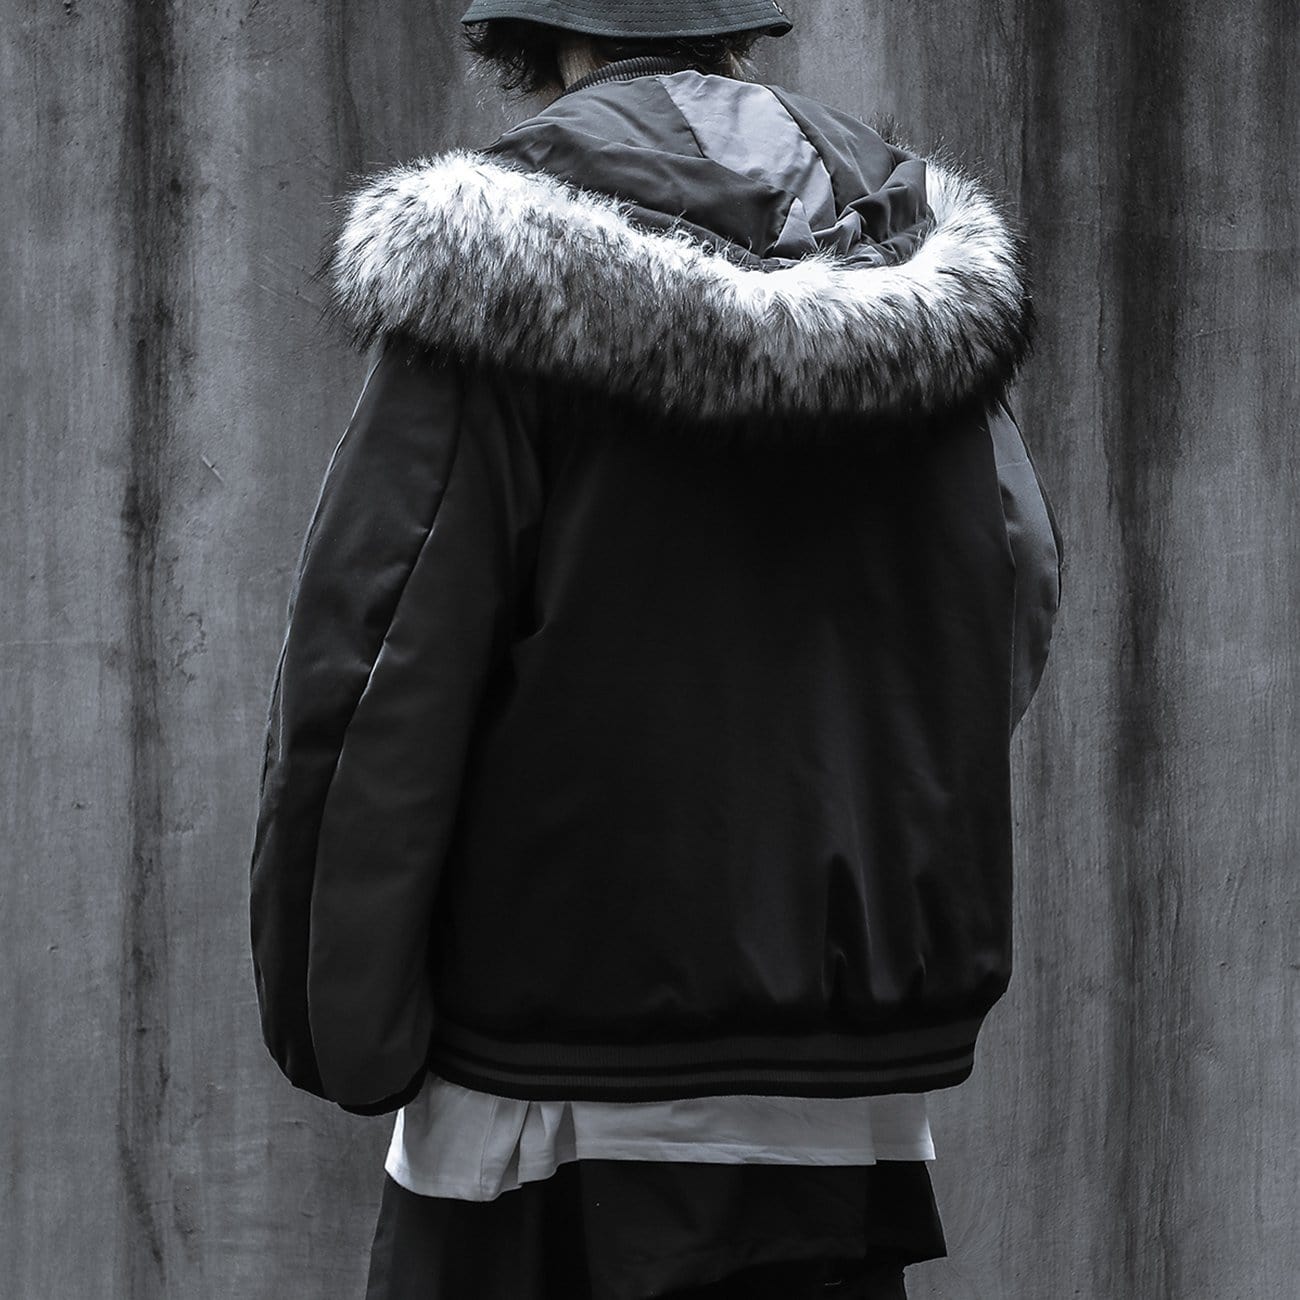 TO Detachable Fur Collar Hat Winter Coat